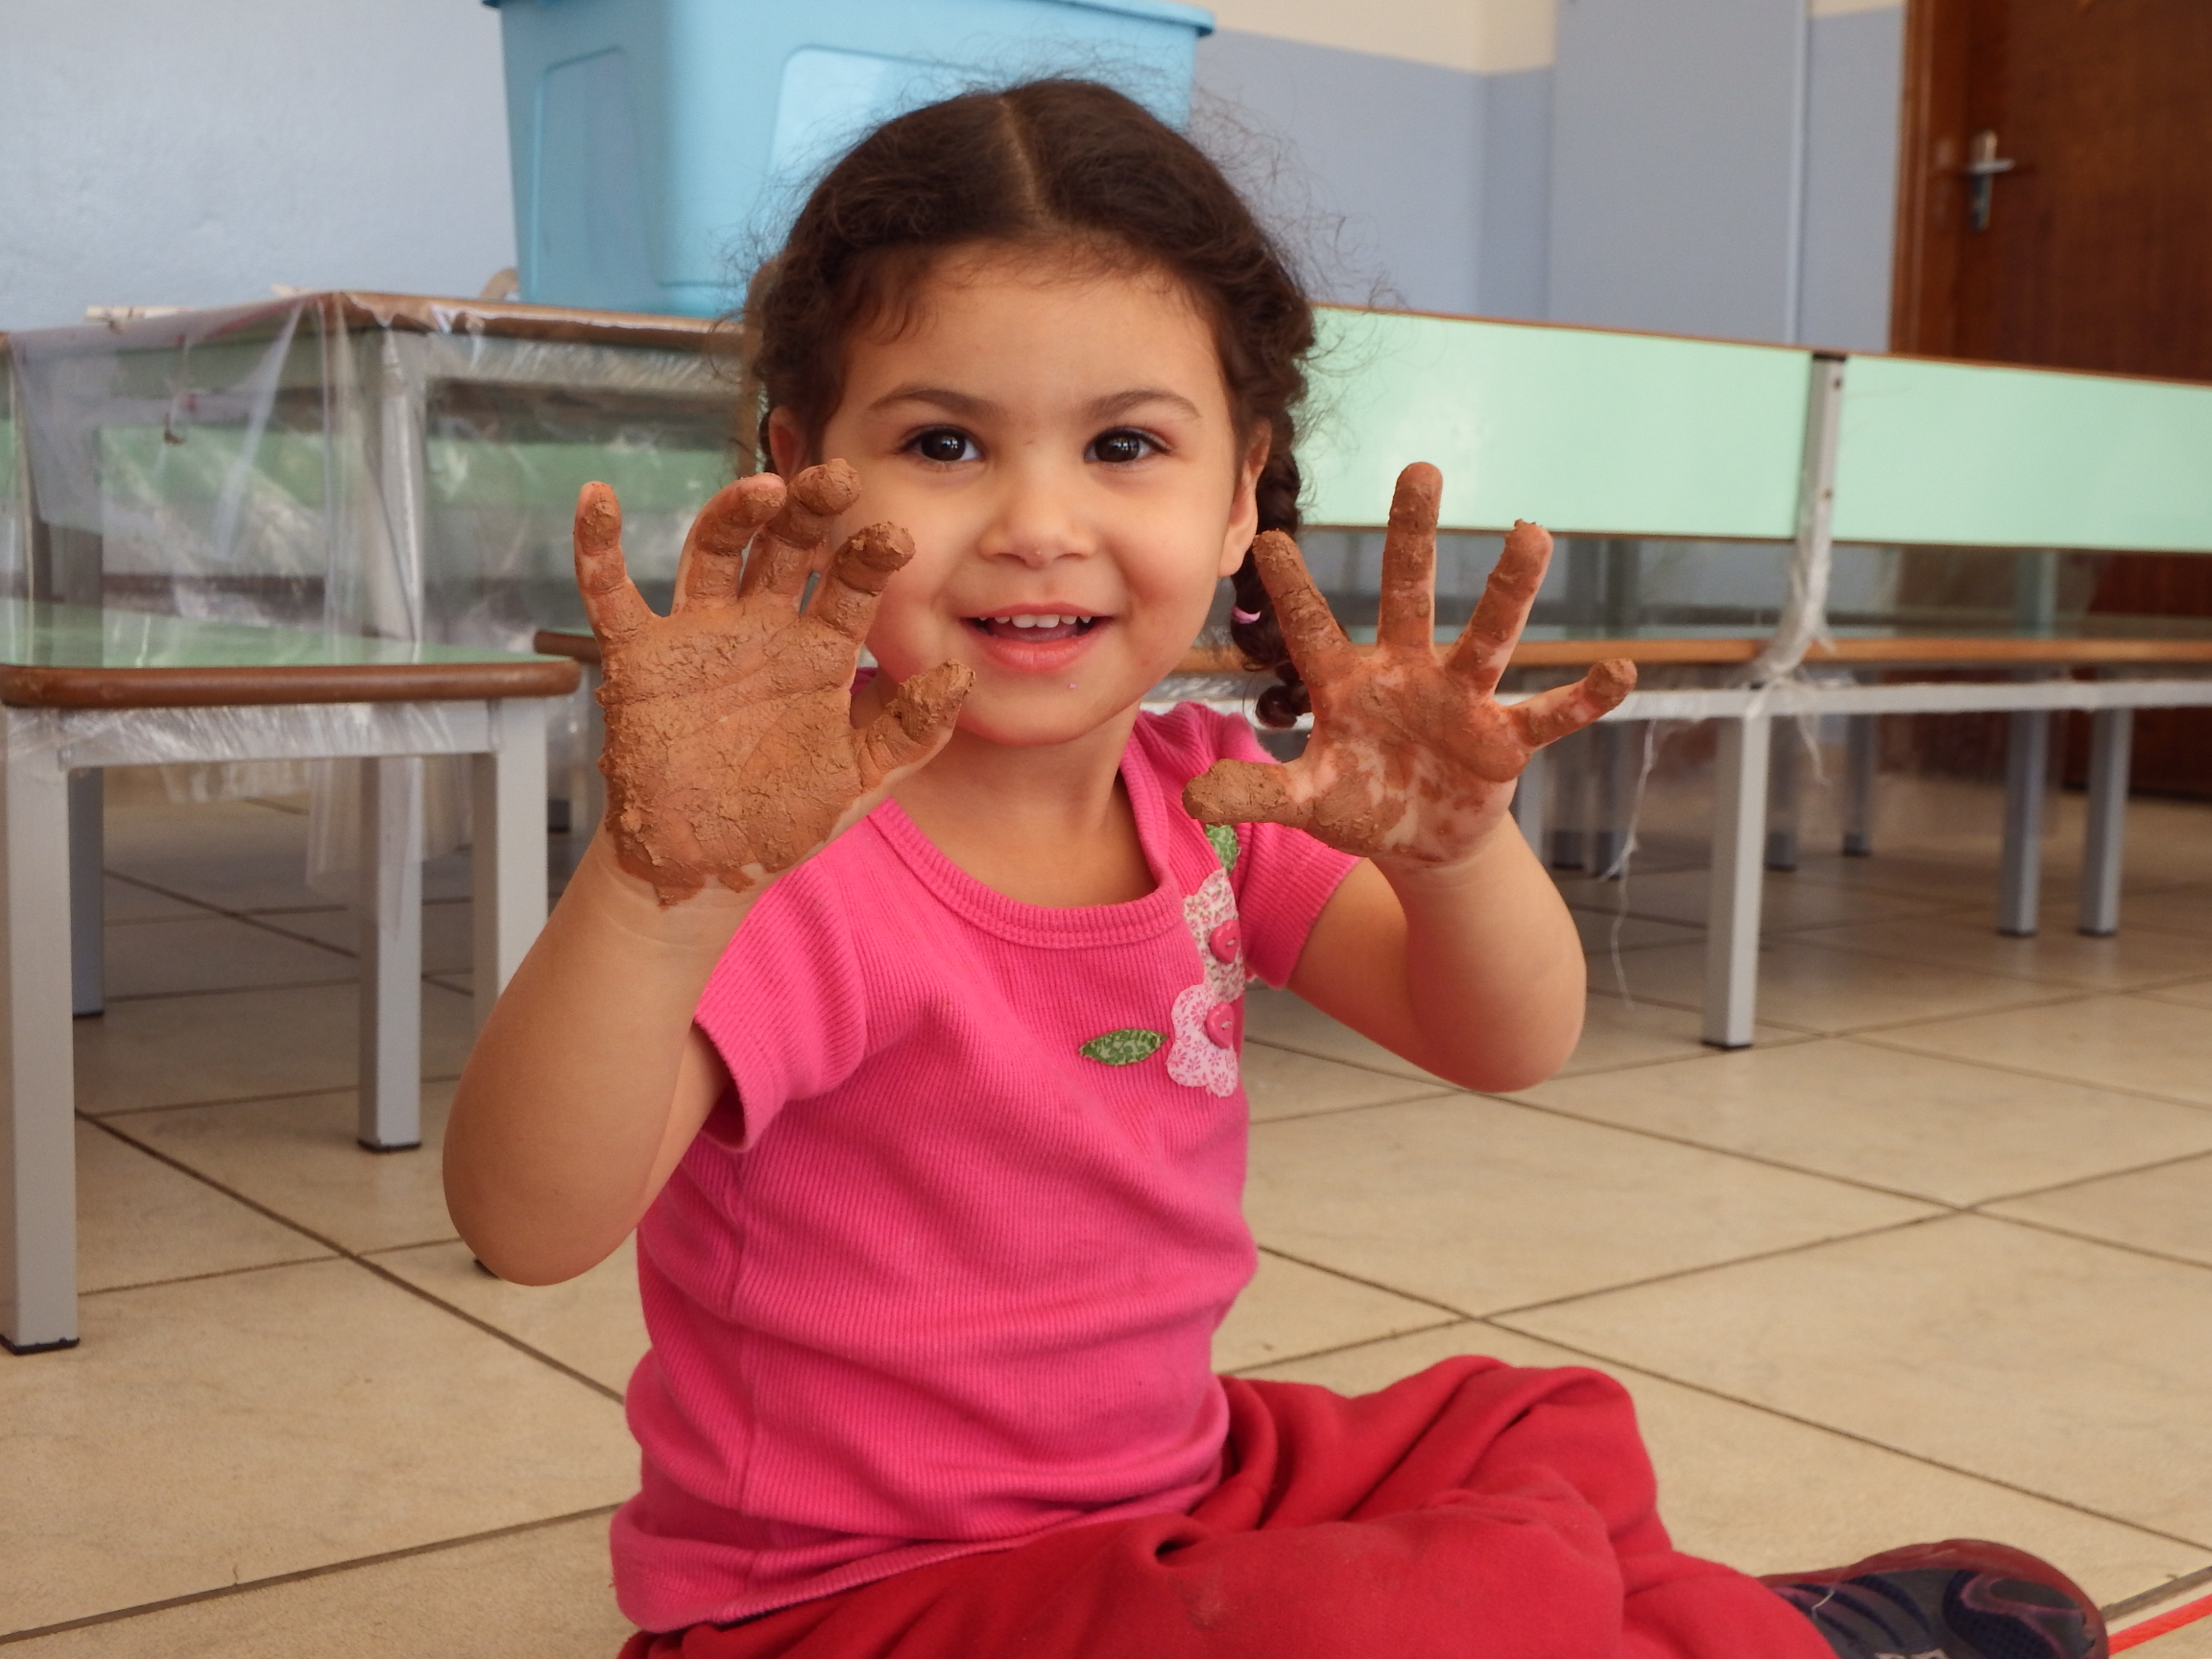 É importante que a criança tenha liberdade de se sujar, pois as brincadeiras que sujam são muito saudáveis (Foto: Maria Rita/instituto.cancaonova.com)